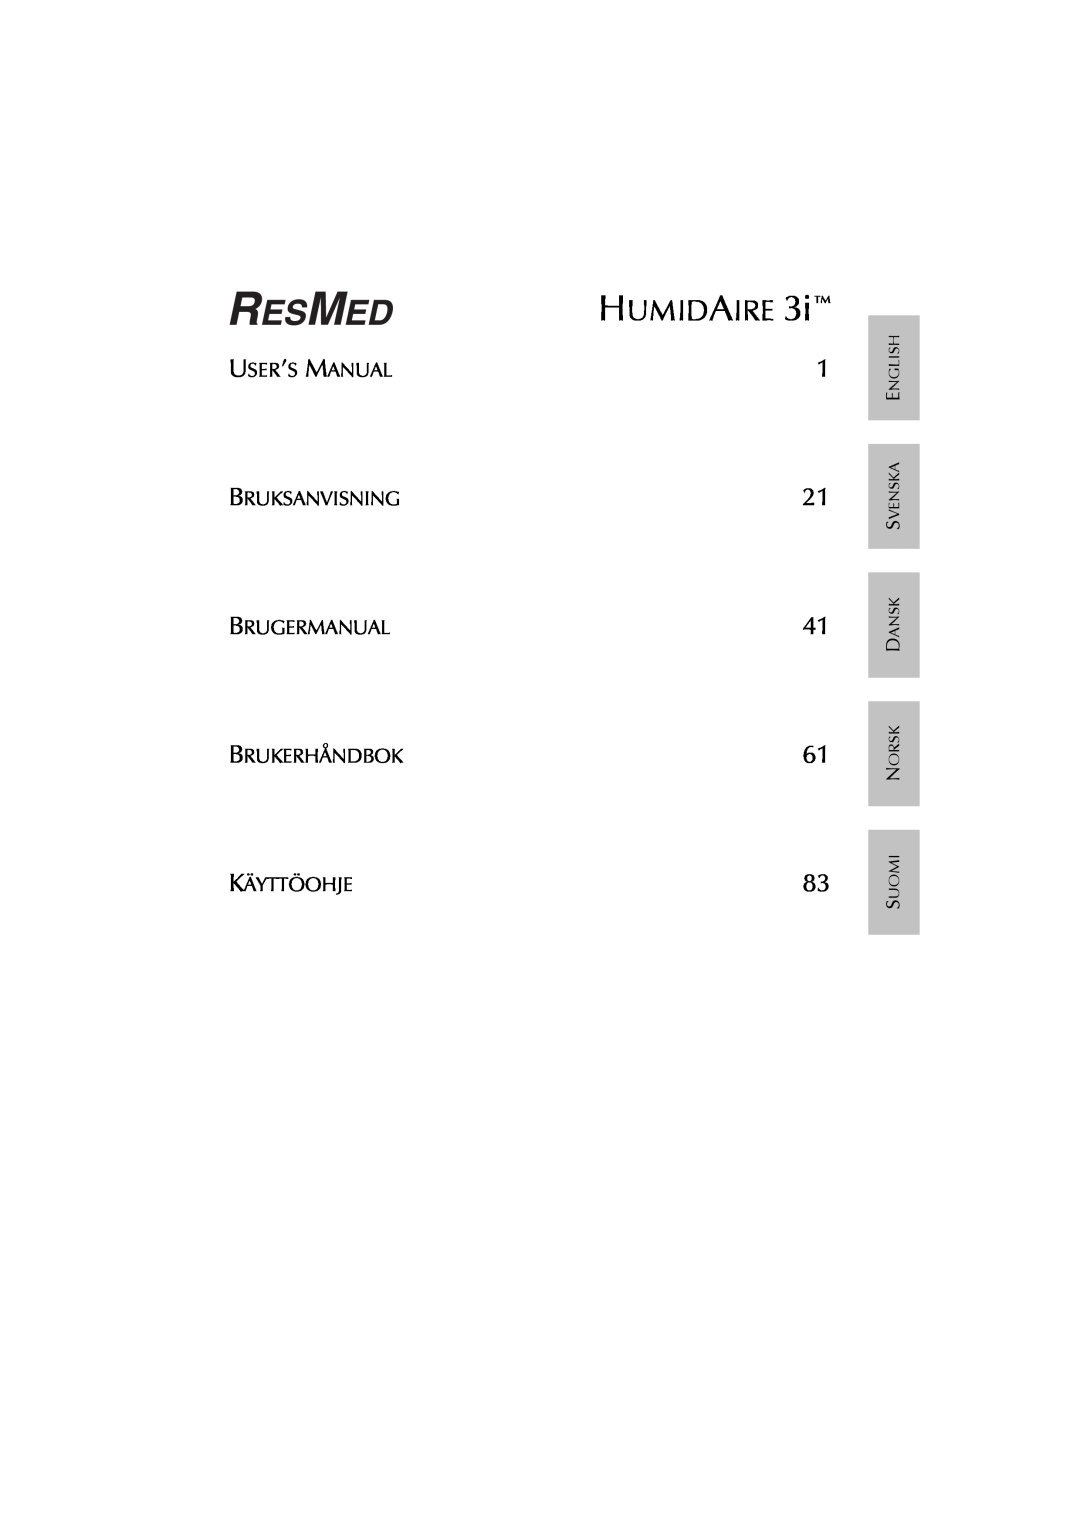 ResMed Humidifier user manual Humidaire, Brukerhåndbok Käyttöohje 